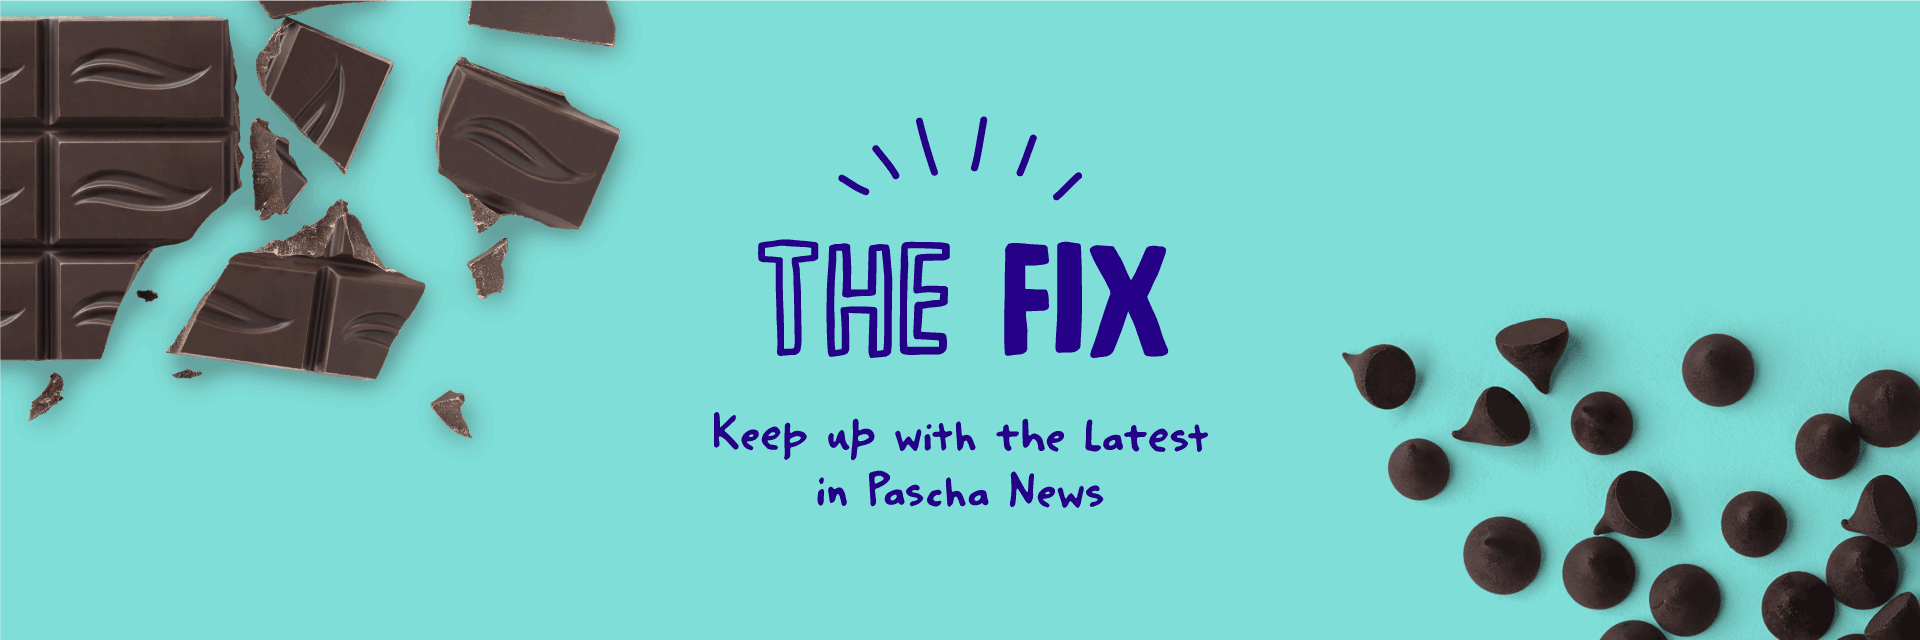 The FIX - Pascha News